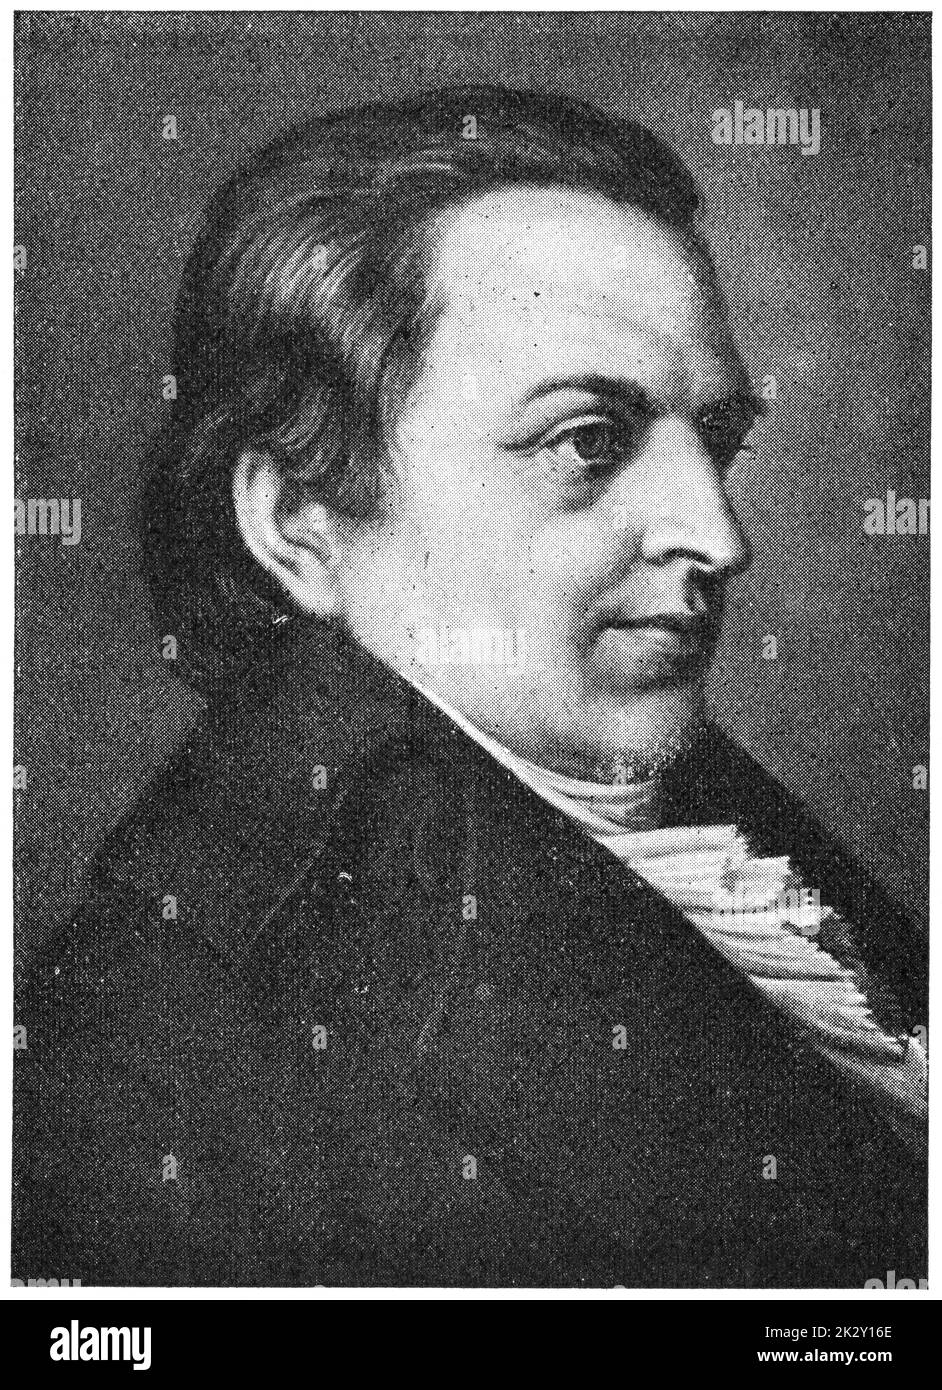 Porträt von Johann Gottlieb Fichte - ein deutscher Philosoph, wurde eine Gründungsfigur der philosophischen Bewegung als deutscher Idealismus bekannt. Illustration des 19. Jahrhunderts. Weißer Hintergrund. Stockfoto